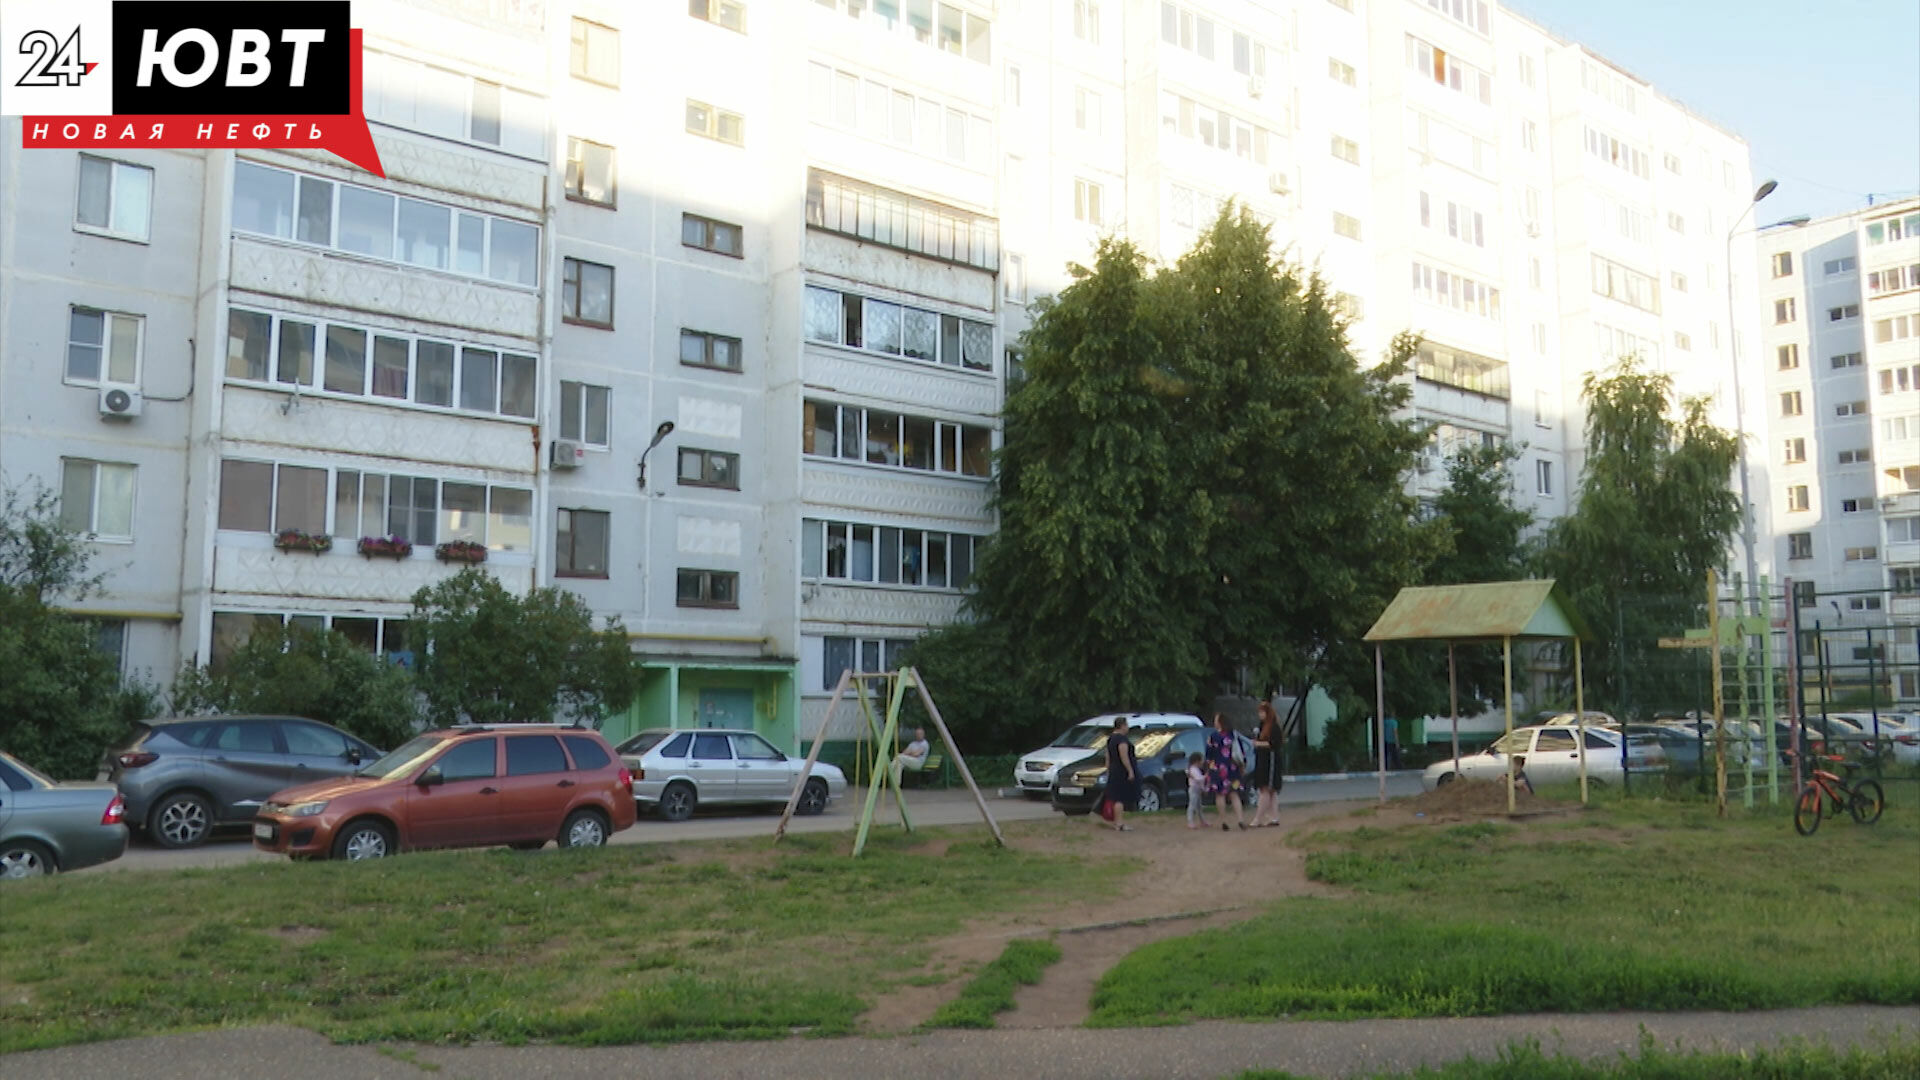 «Внутри у нас, как сарай!»: говорят жильцы одного из домов в Альметьевске